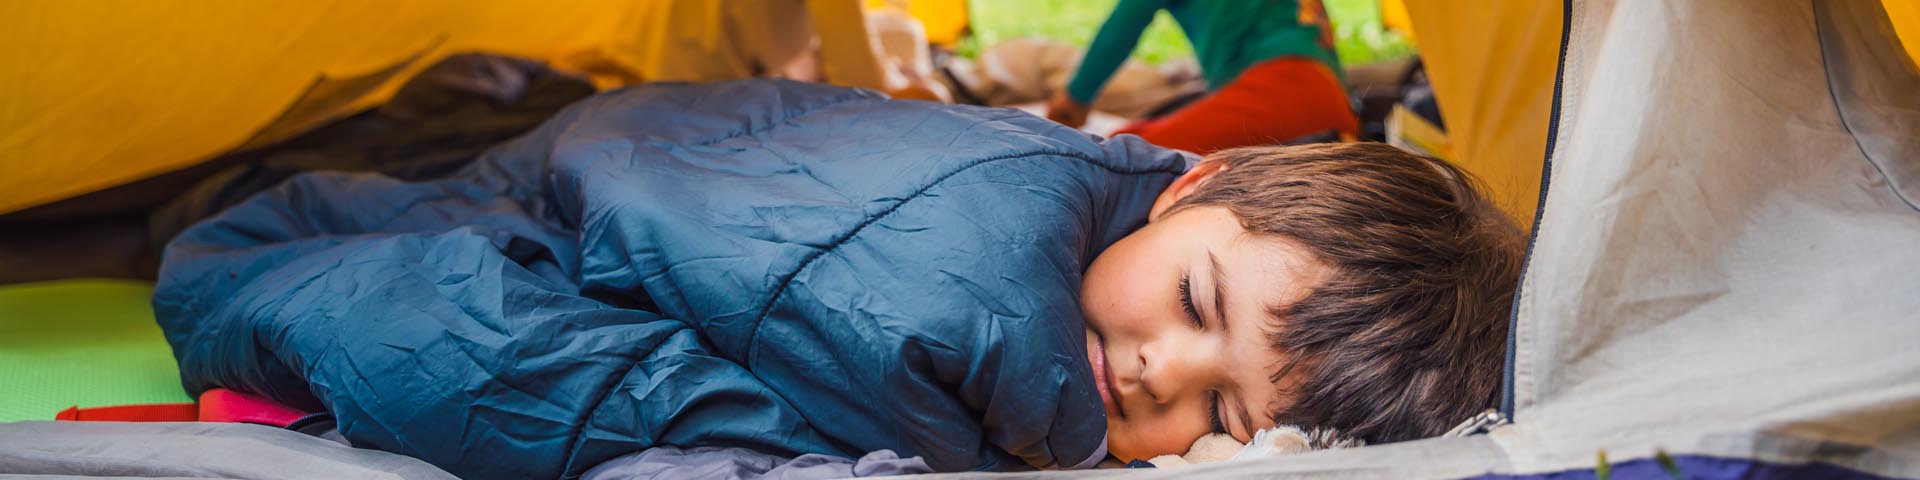 Un jeune enfant endormi dans une tente.